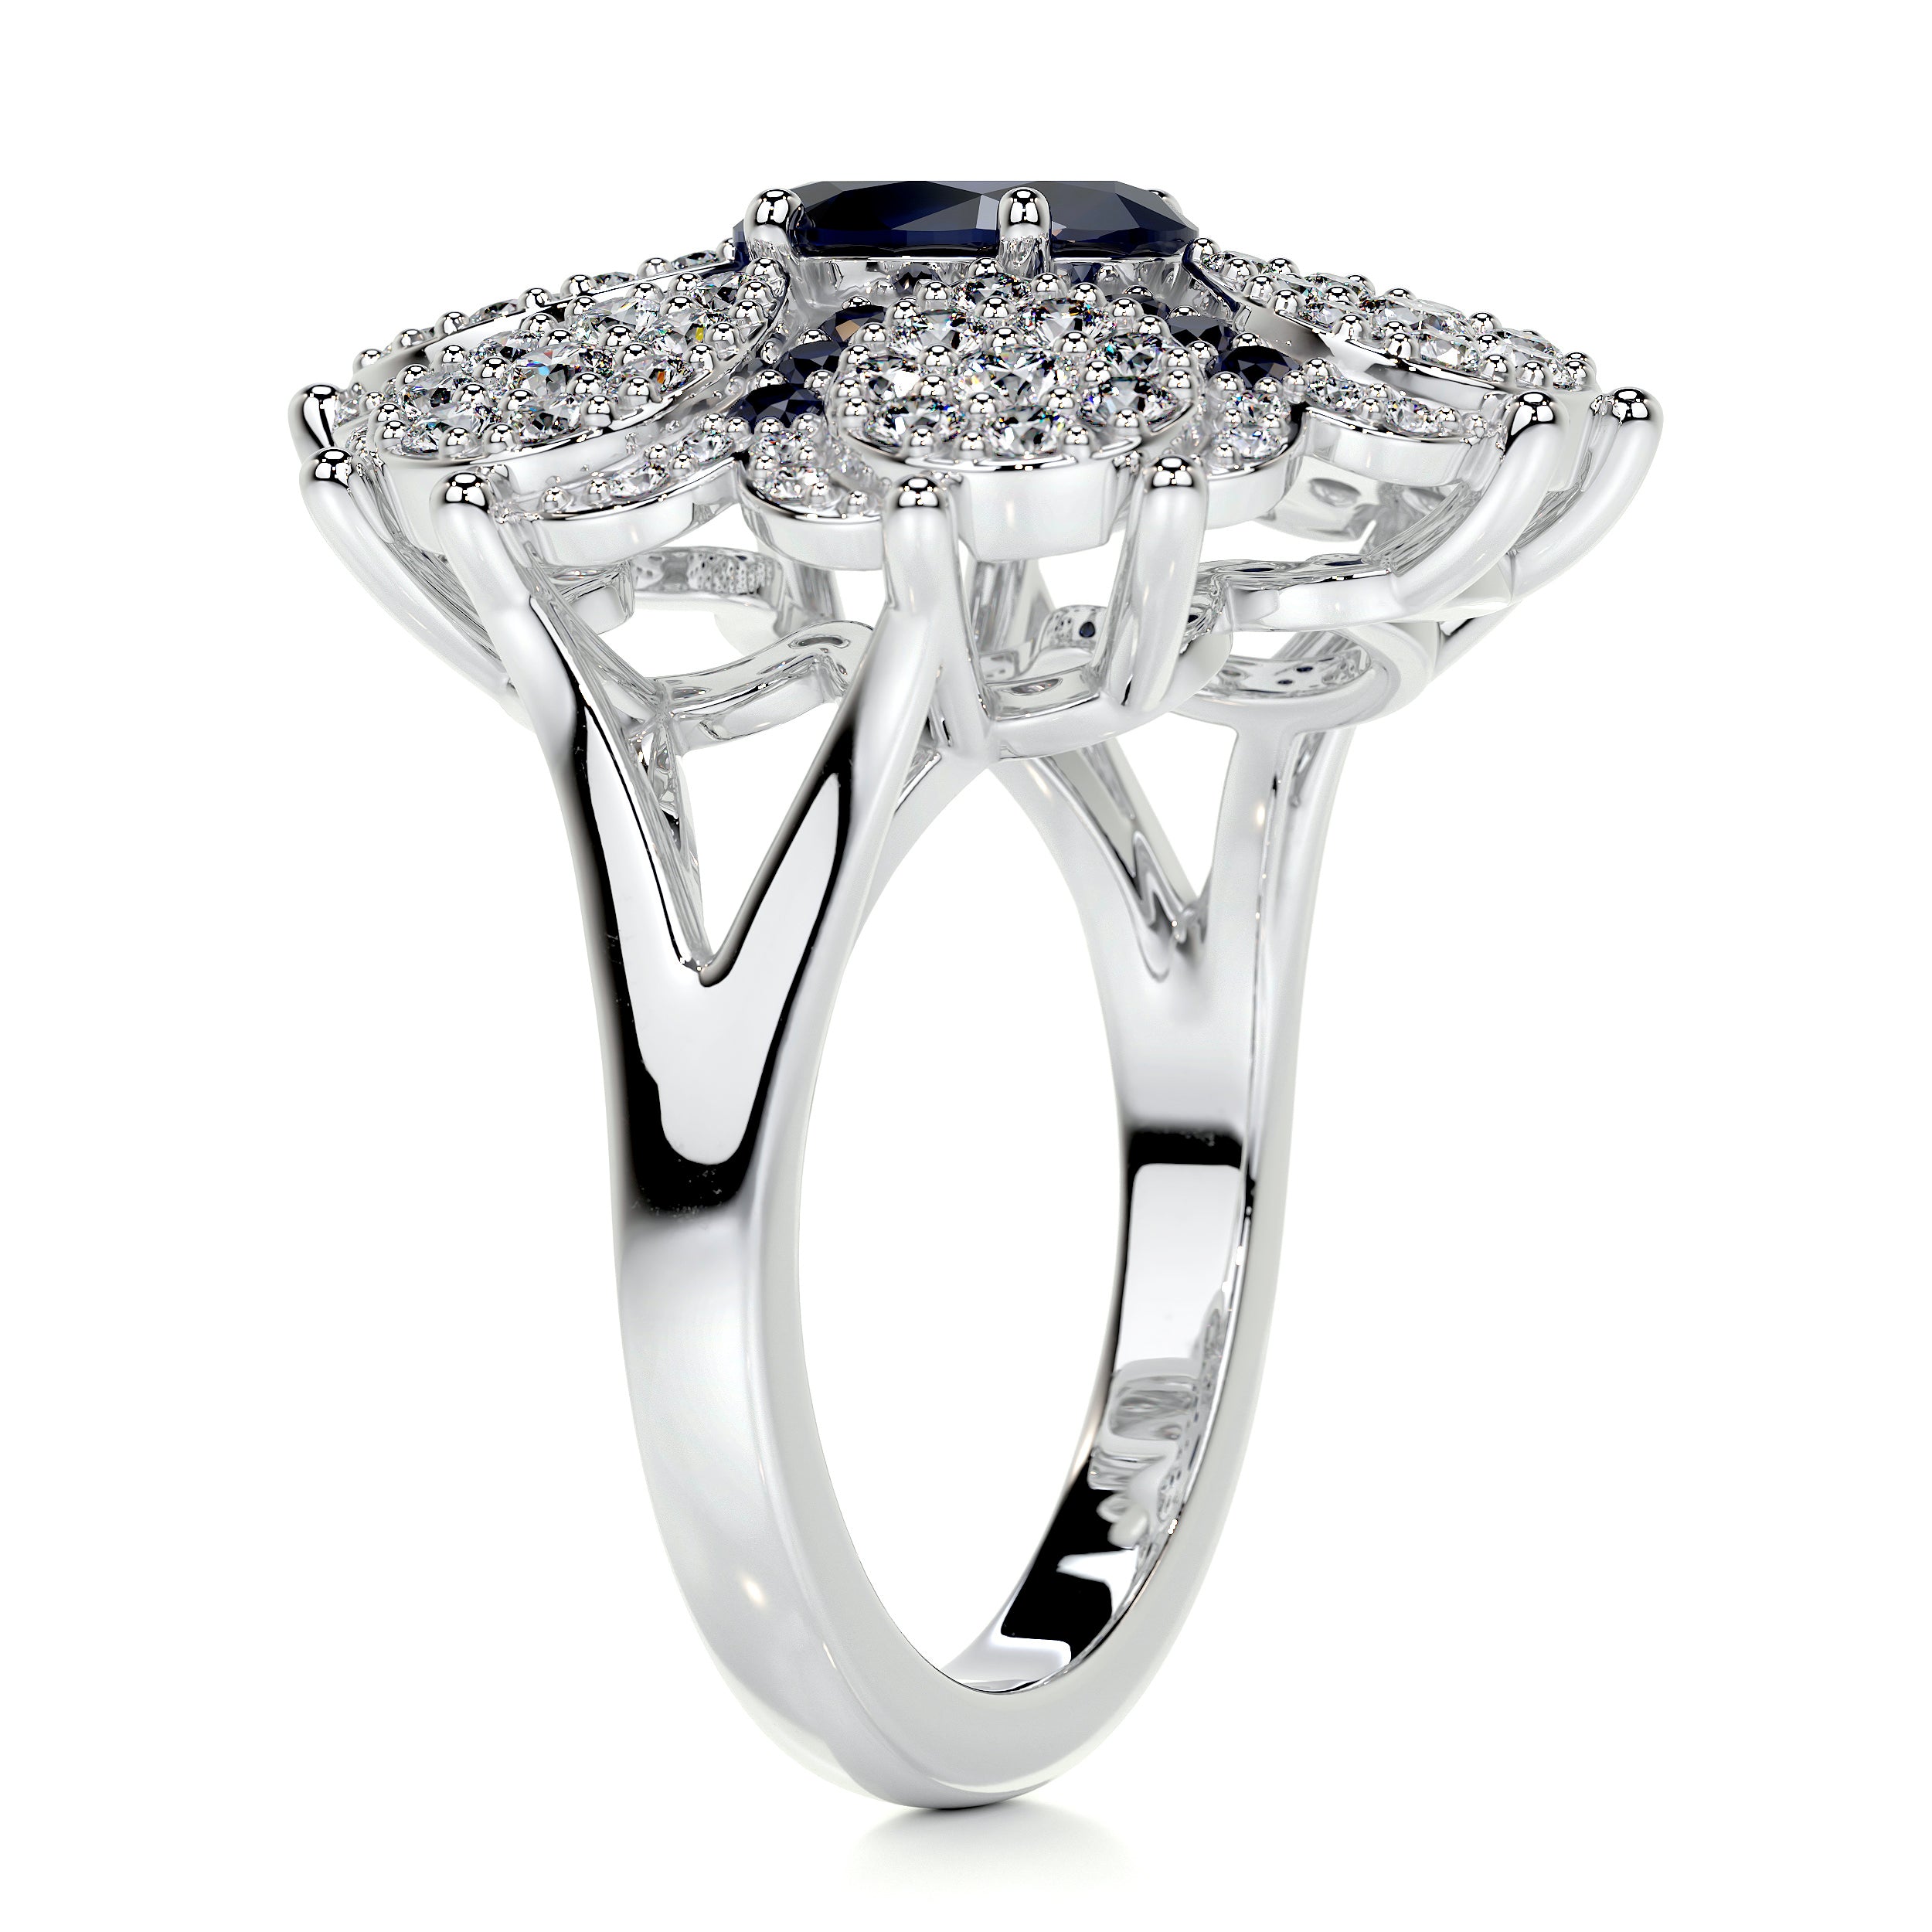 Amora Fashion Gemstones & Diamonds Ring   (2.91 Carat) -18K White Gold